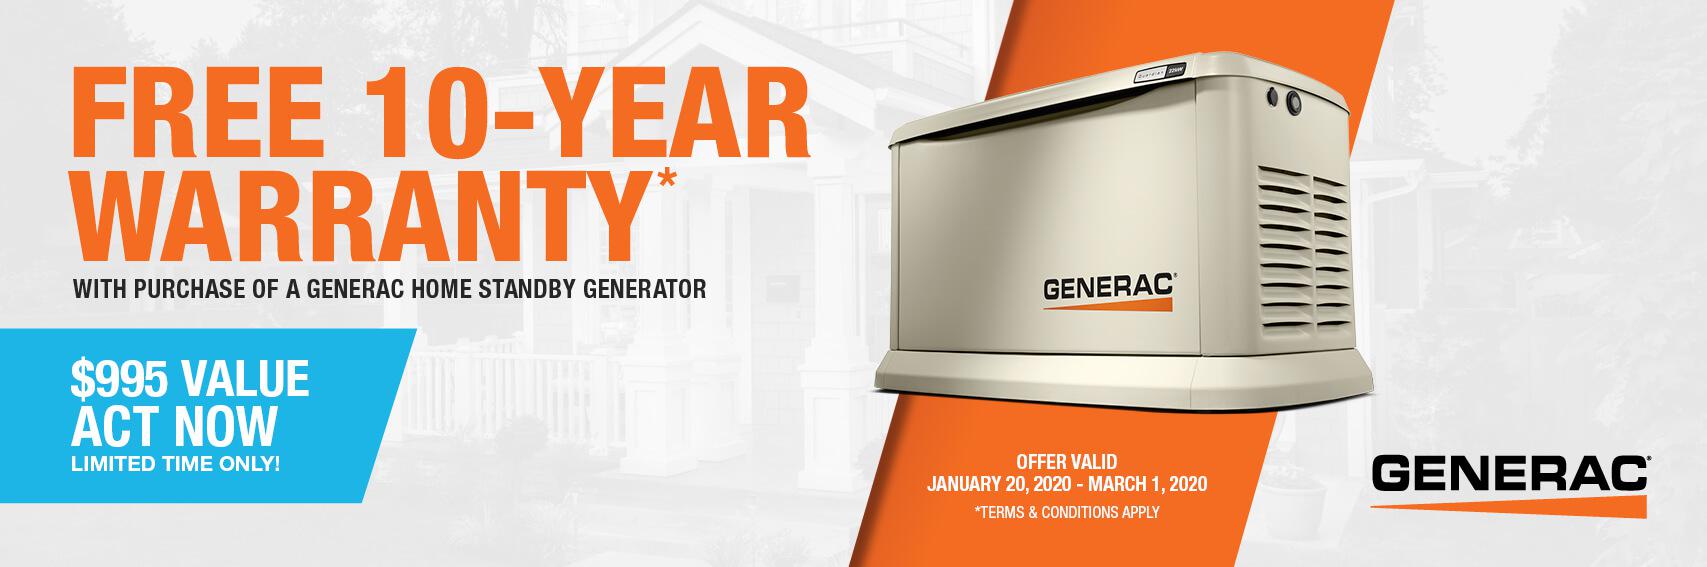 Homestandby Generator Deal | Warranty Offer | Generac Dealer | Walnut Creek, CA